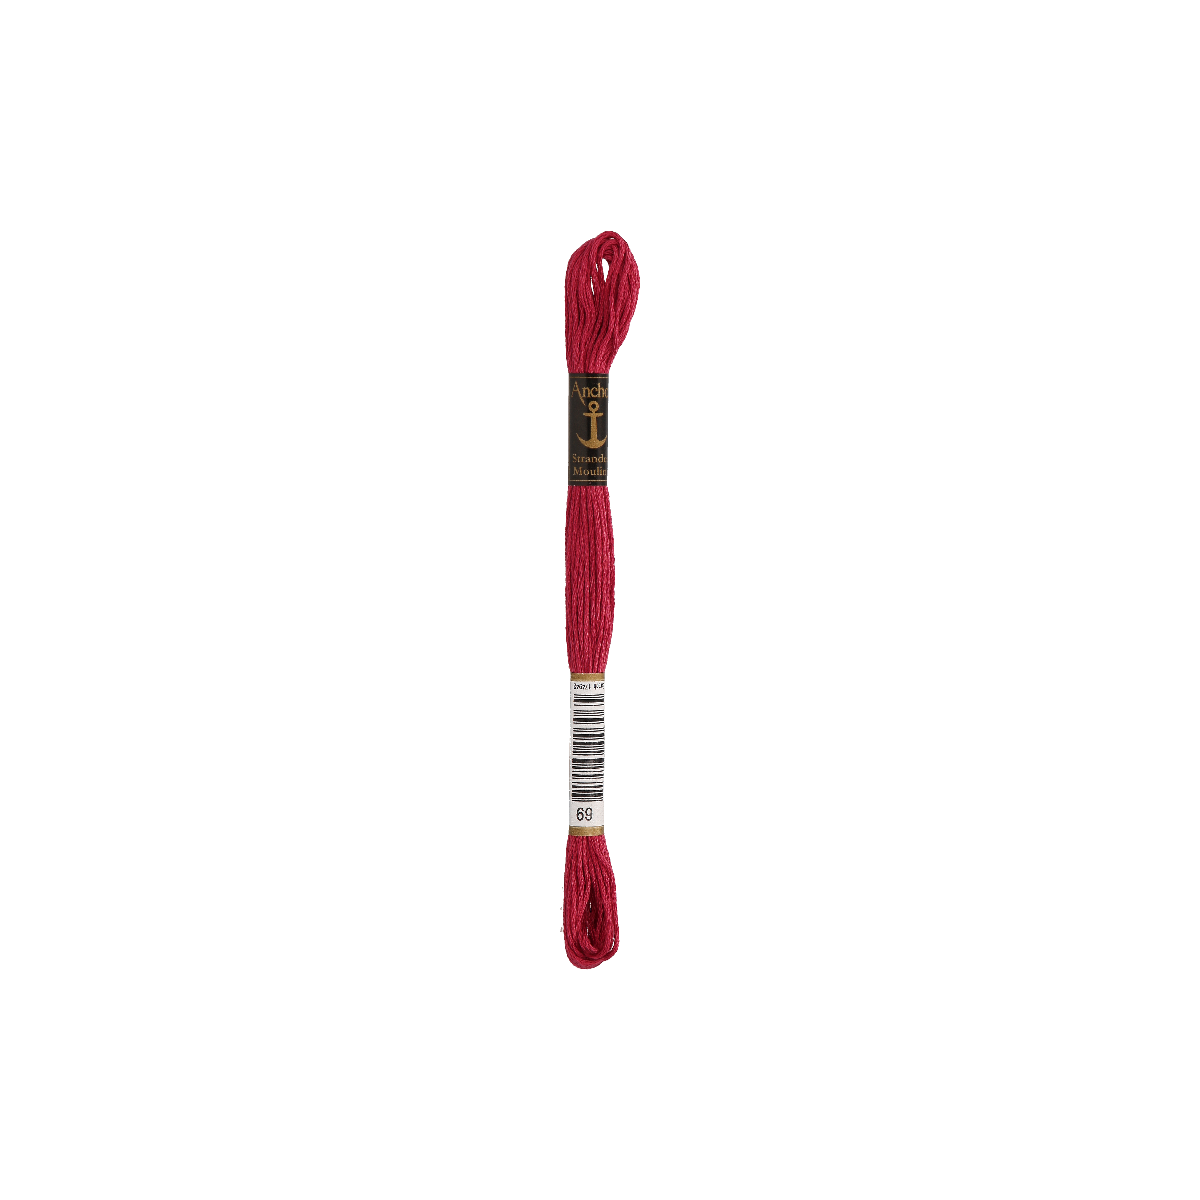 Anchor Sticktwist 8m, burgund, Baumwolle, Farbe 69,...